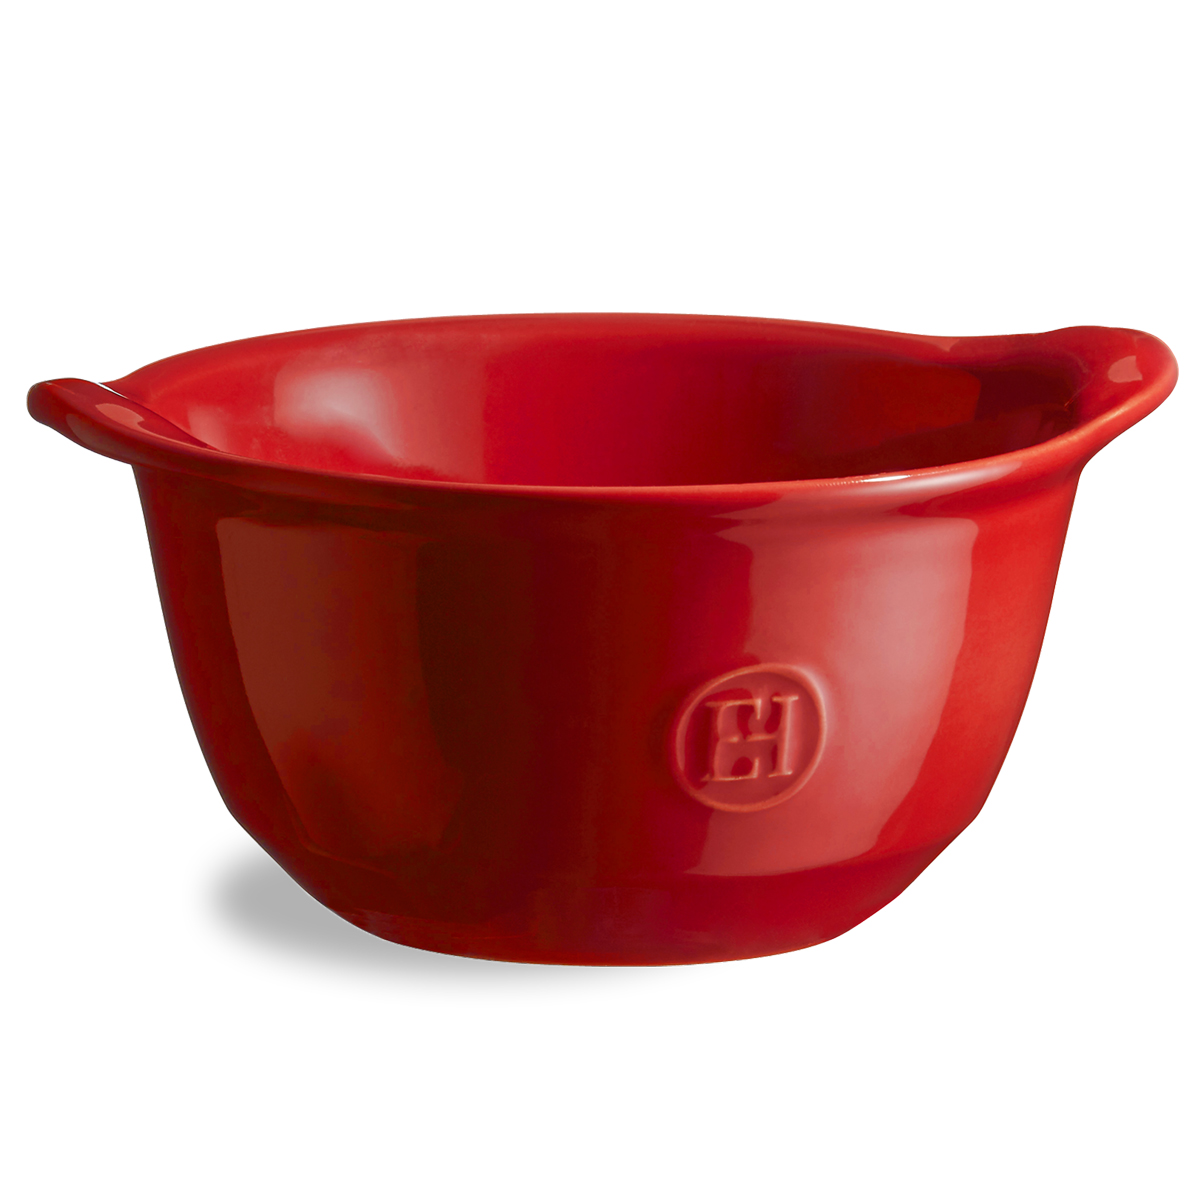 Versáteis, os bowls para gratinar são agradáveis e fáceis de manusear, mesmo para tomar sopa quente com eles.